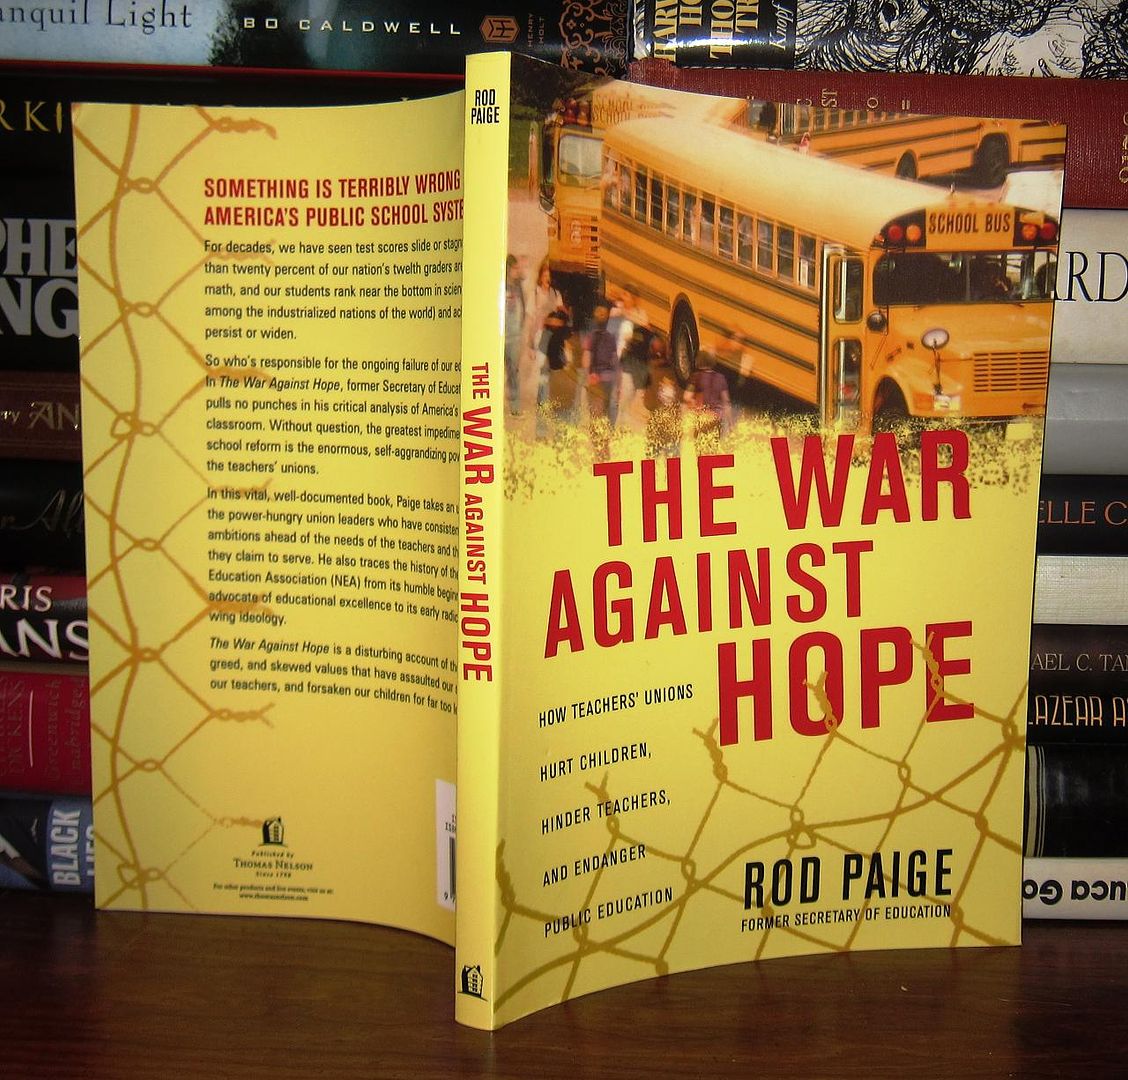 PAIGE, ROD - The War Against Hope How Teachers' Unions Hurt Children, Hinder Teachers, and Endanger Public Education